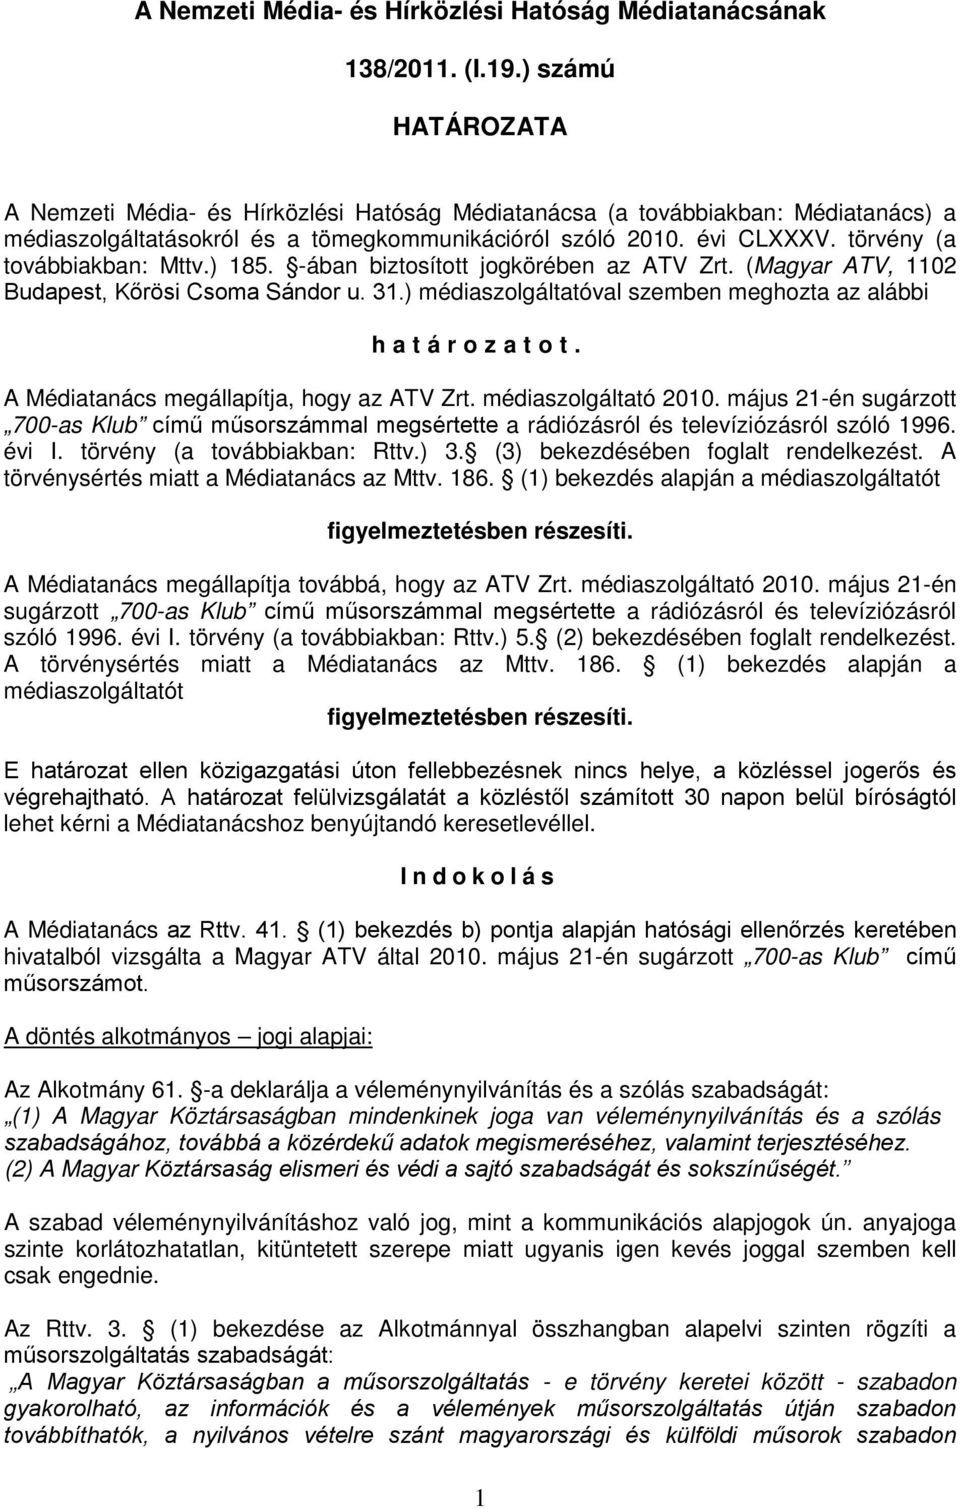 törvény (a továbbiakban: Mttv.) 185. -ában biztosított jogkörében az ATV Zrt. (Magyar ATV, 1102 Budapest, Kőrösi Csoma Sándor u. 31.) médiaszolgáltatóval szemben meghozta az alábbi határozatot.